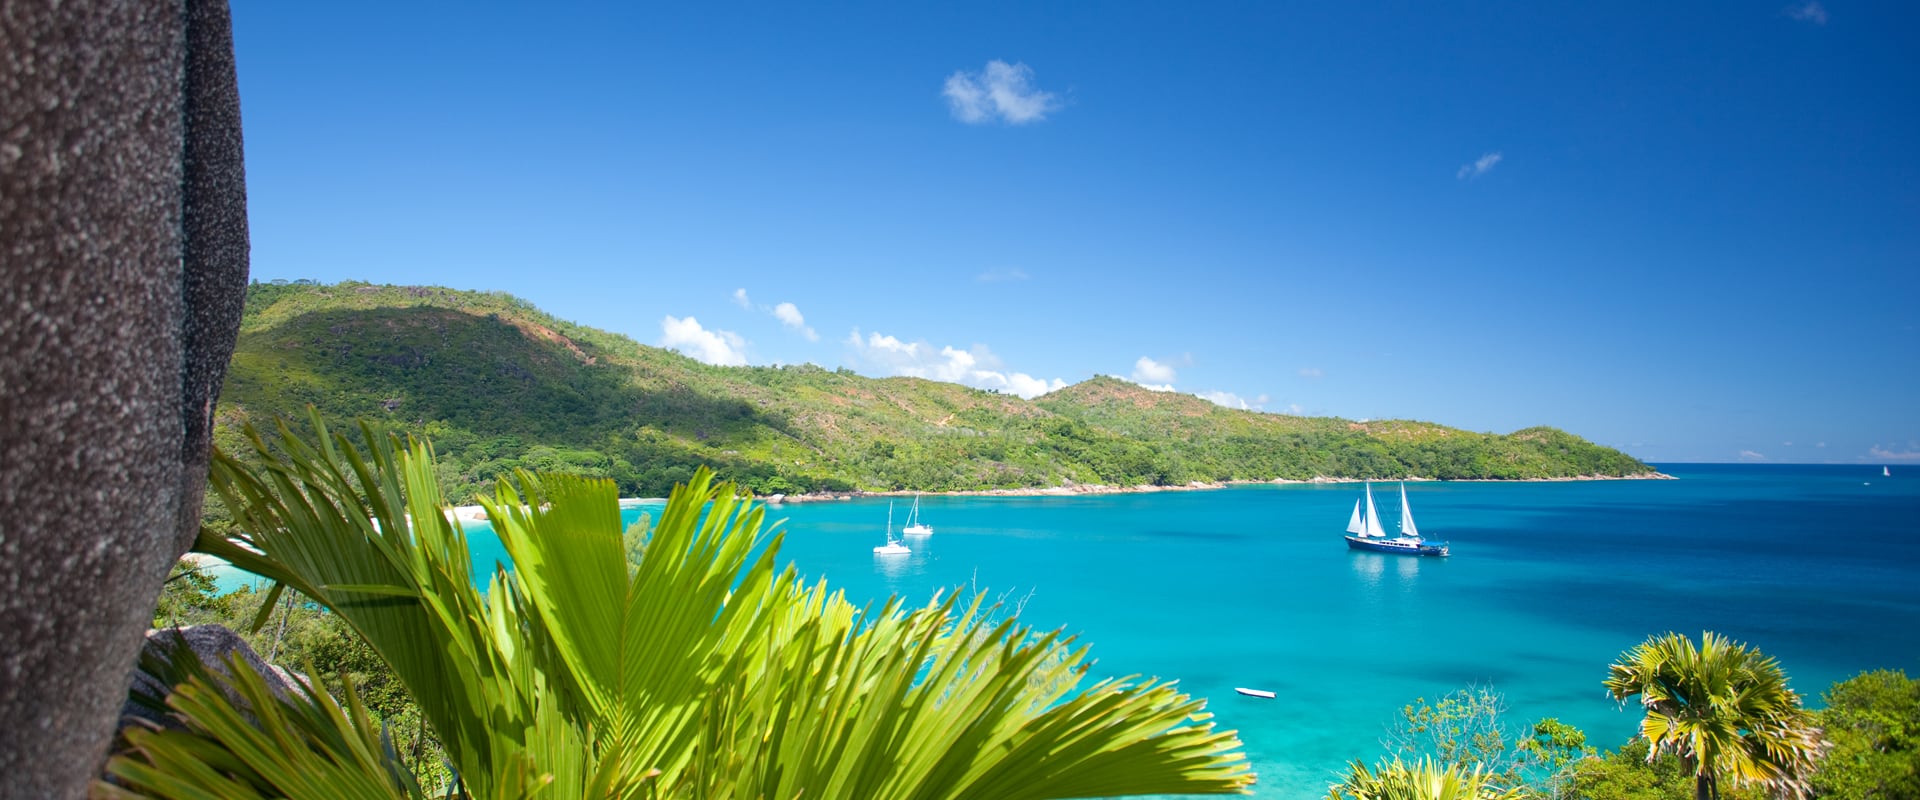 5 Kleinschalige Cruises in Seychellen - LiveAboard.com